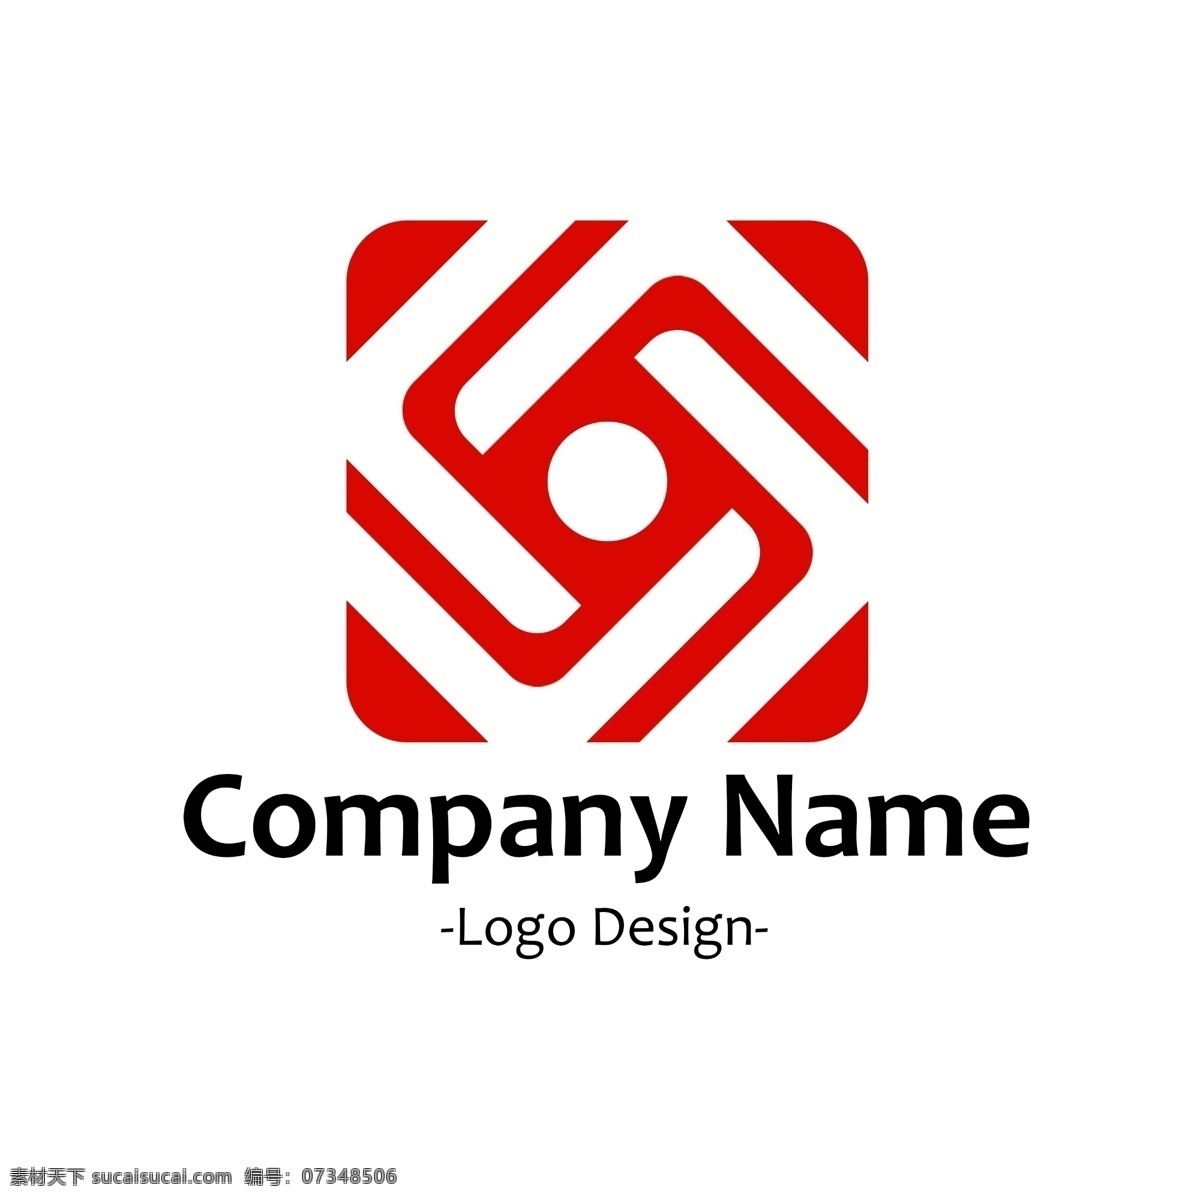 公司 商标 logo 标识 标志